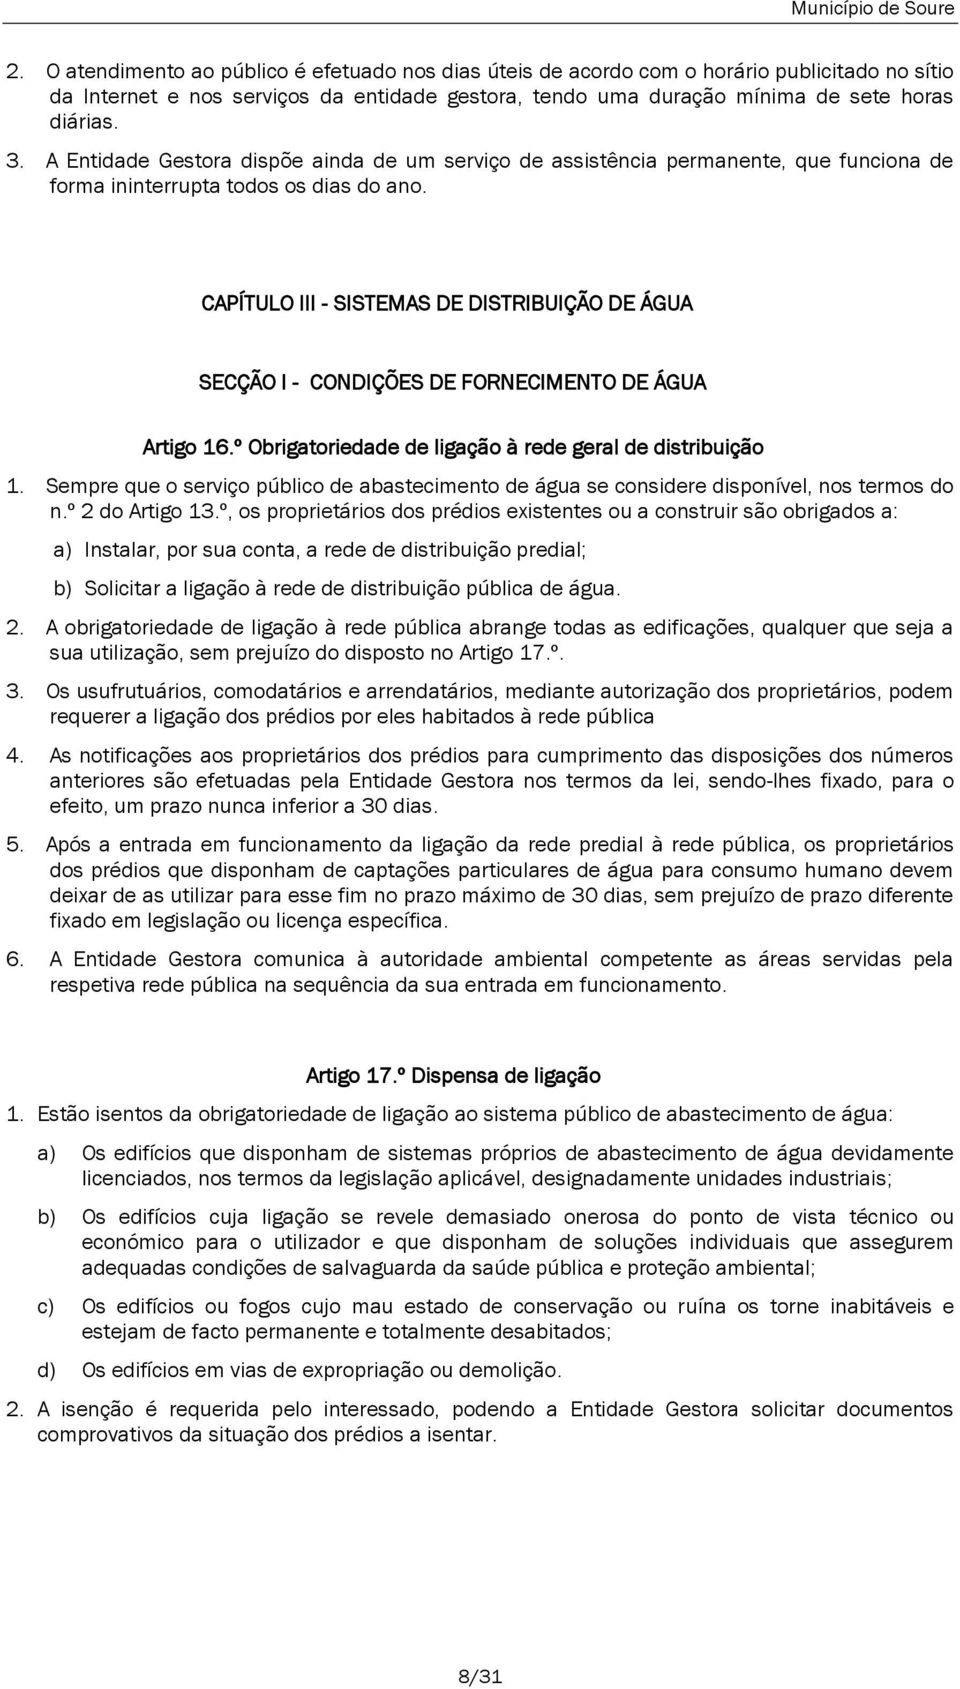 CAPÍTULO III - SISTEMAS DE DISTRIBUIÇÃO DE ÁGUA SECÇÃO I - CONDIÇÕES DE FORNECIMENTO DE ÁGUA Artigo 16.º Obrigatoriedade de ligação à rede geral de distribuição 1.